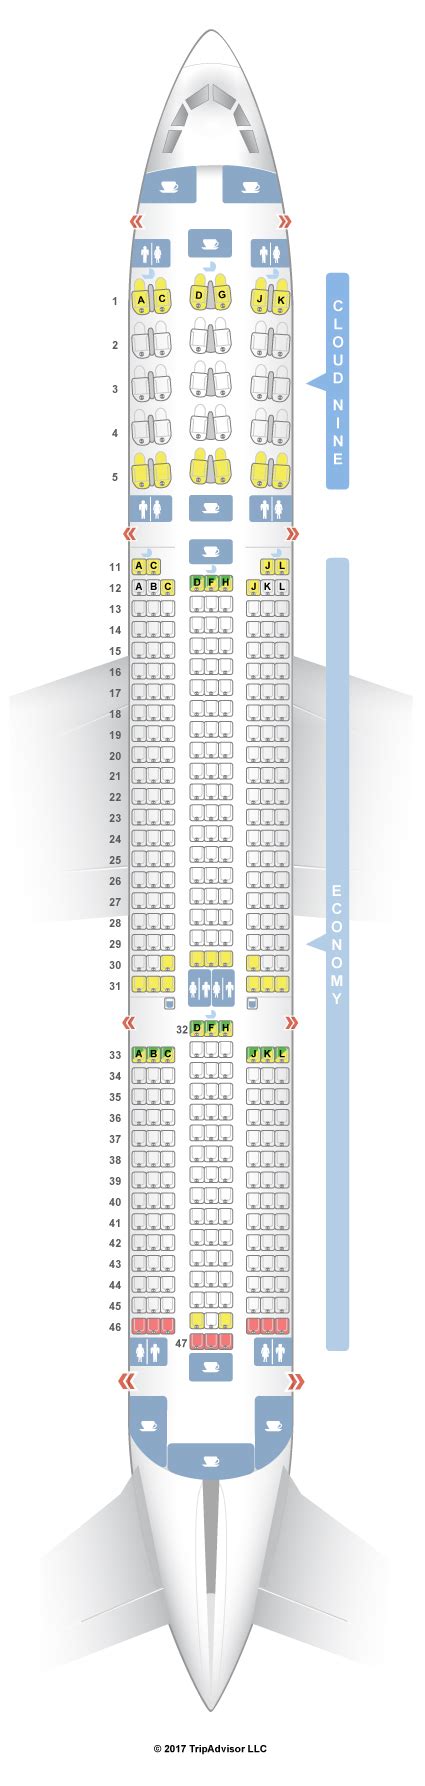 Seatguru Seat Map Ethiopian Airlines Airbus A350 900 350